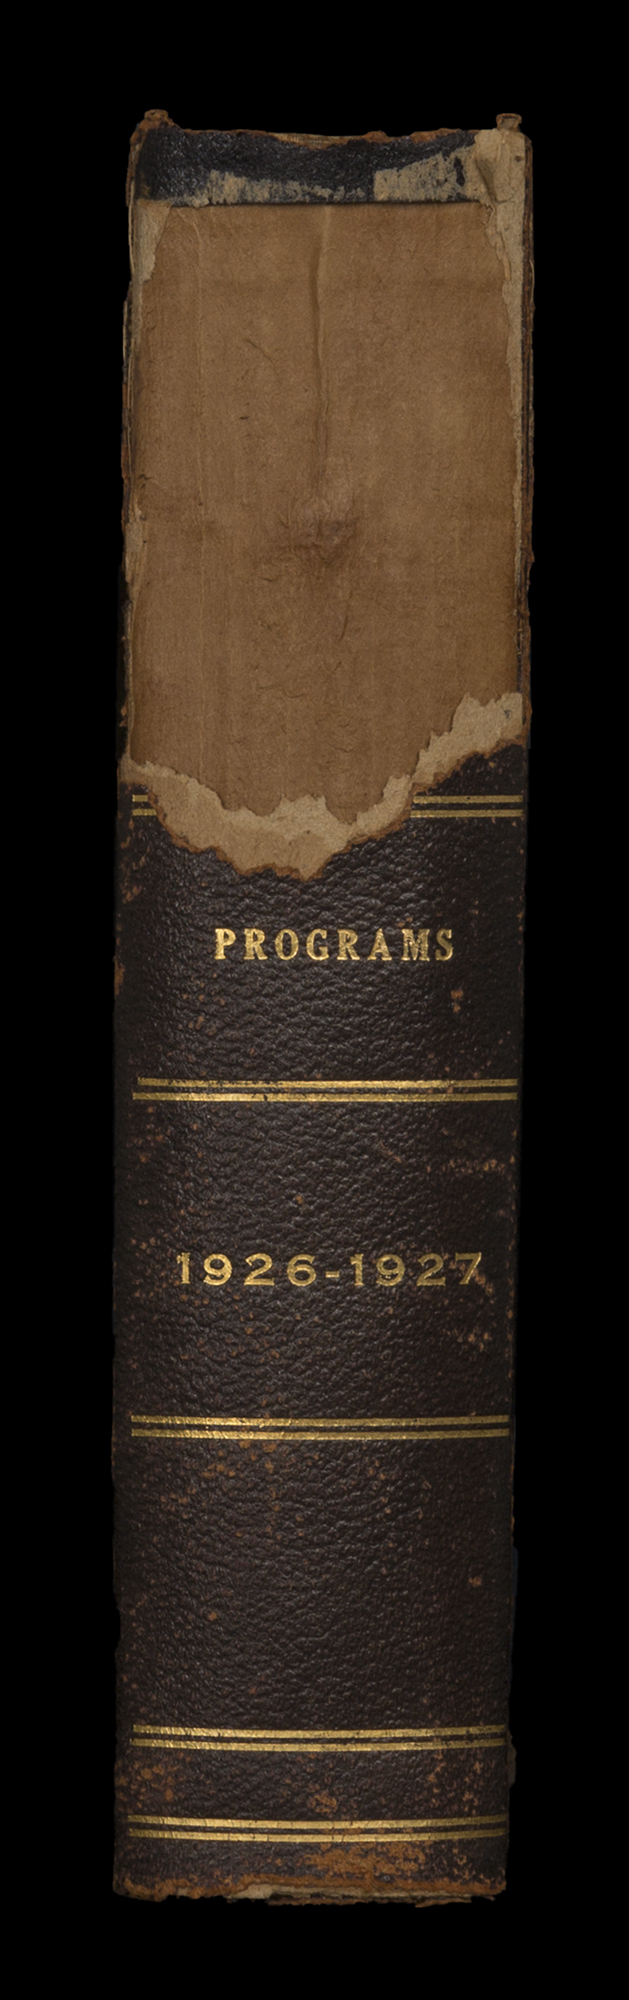 LAPO_ProgramBook_Spine_1926-1927.jpg